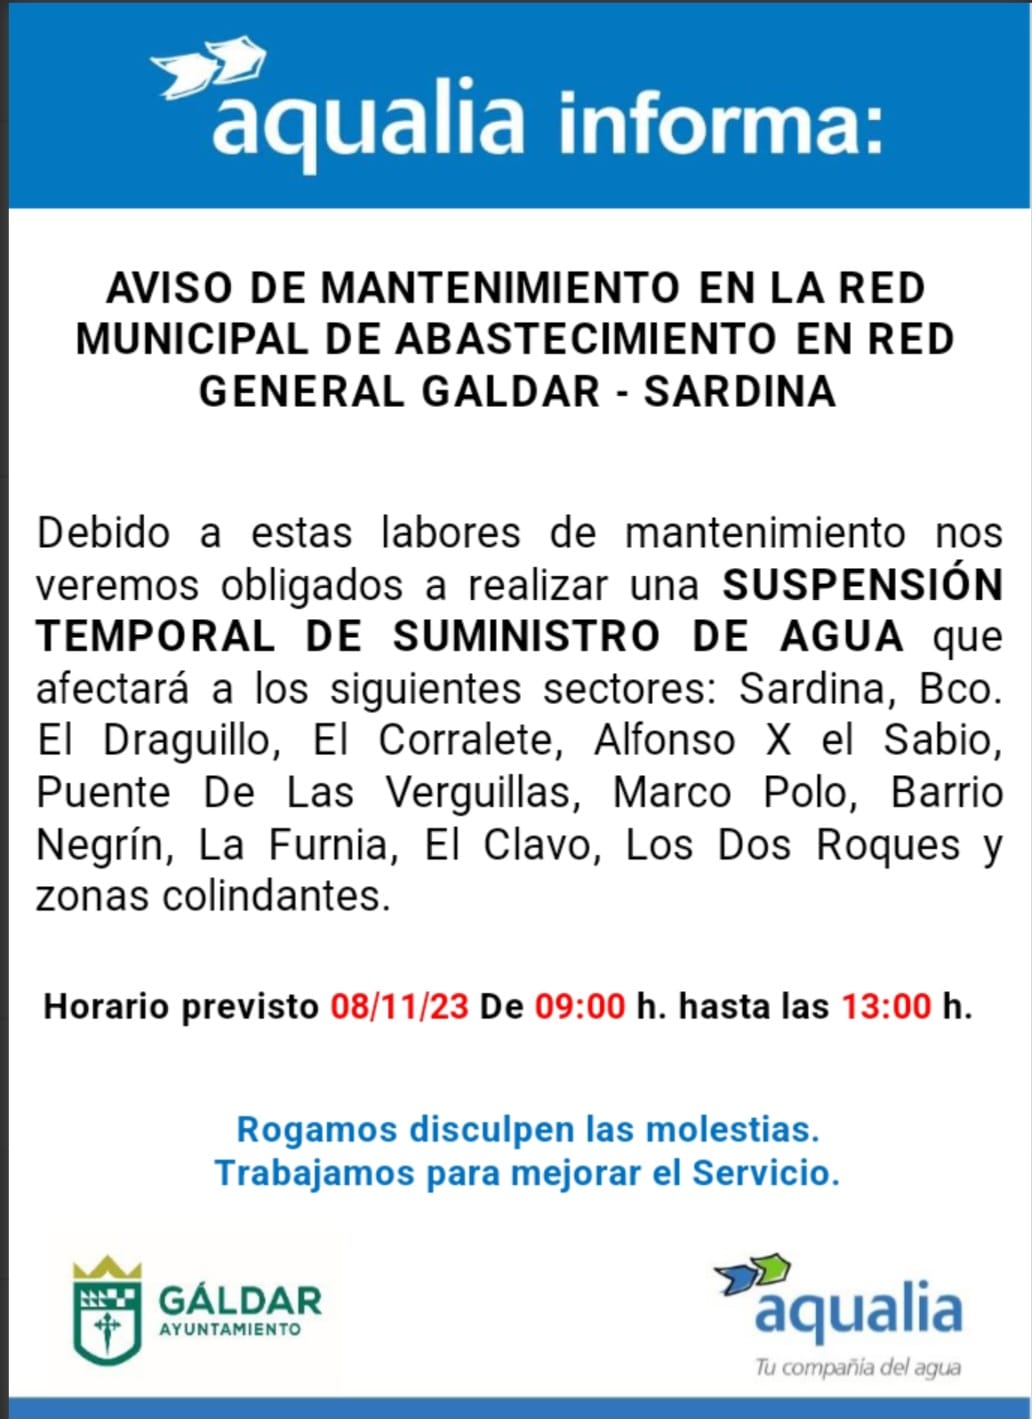 Aqualia informa de un corte temporal del suministro por mantenimiento el miércoles en Sardina y zonas colindantes     